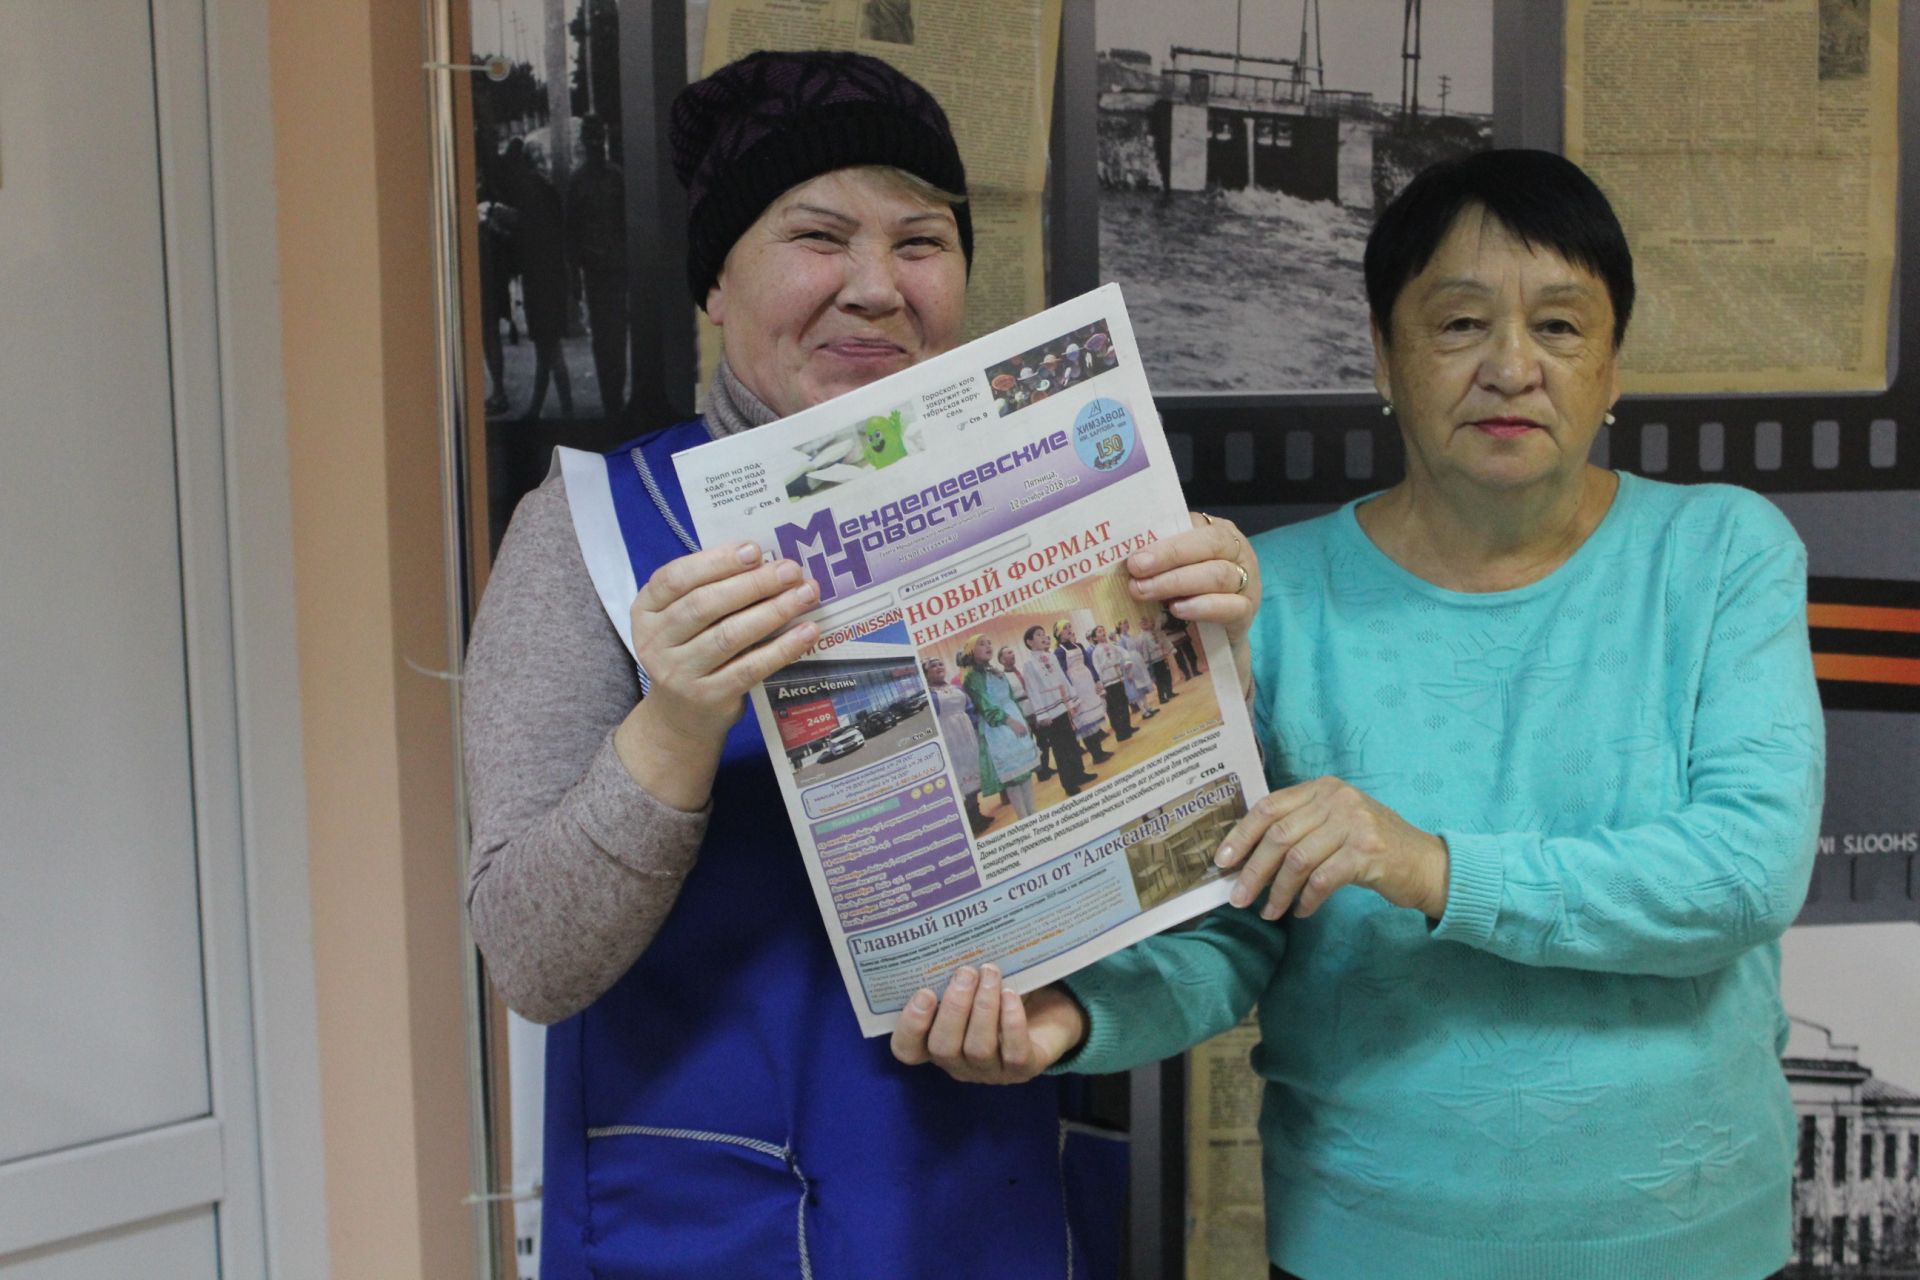 Депутаты городского совета продолжают дарить подписку на «Менделеевские новости» жителям почтенного возраста